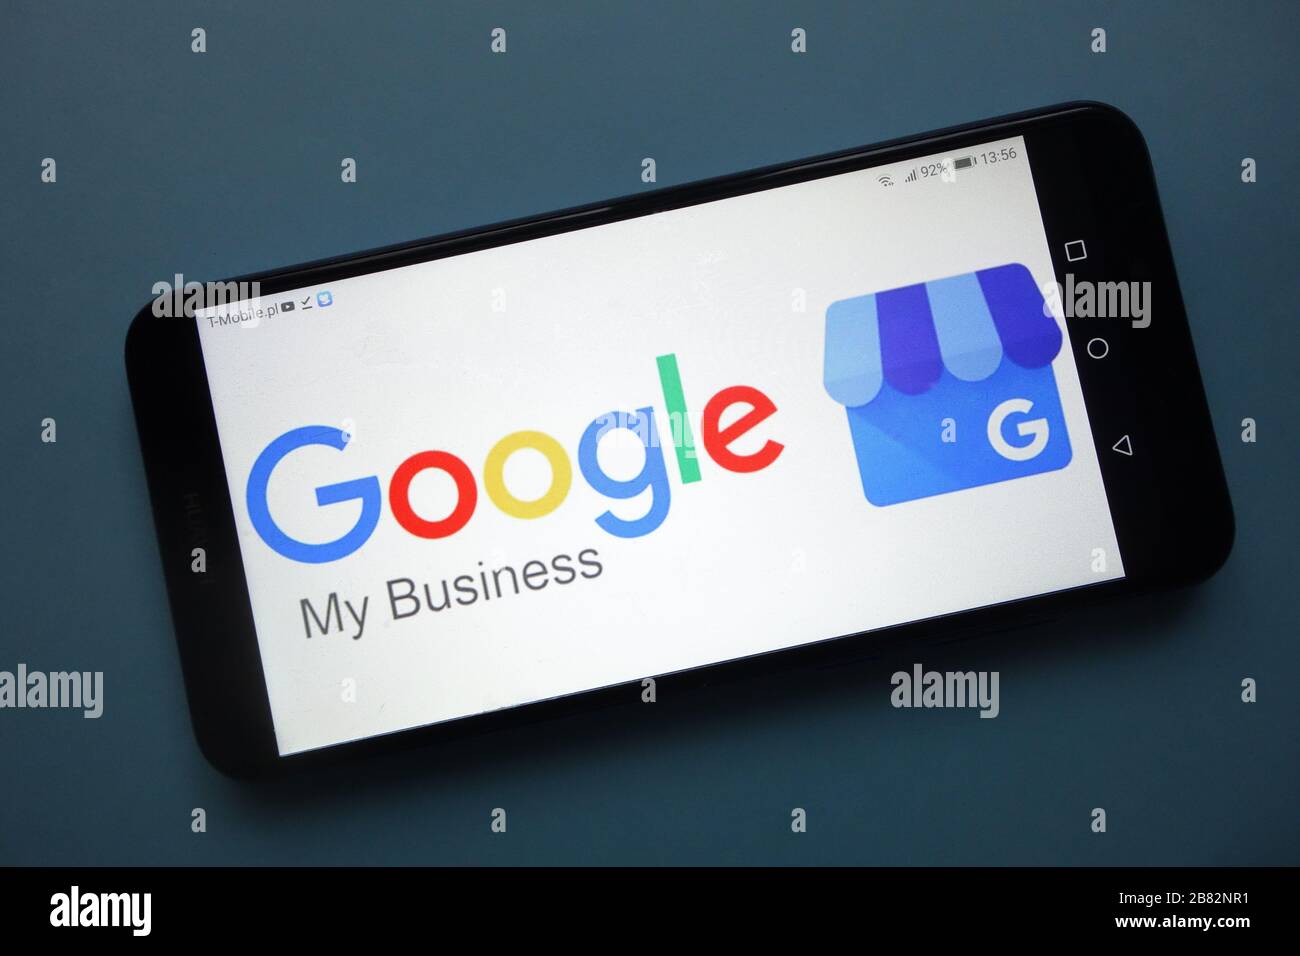 Logo Google My Business affiché sur le smartphone Banque D'Images